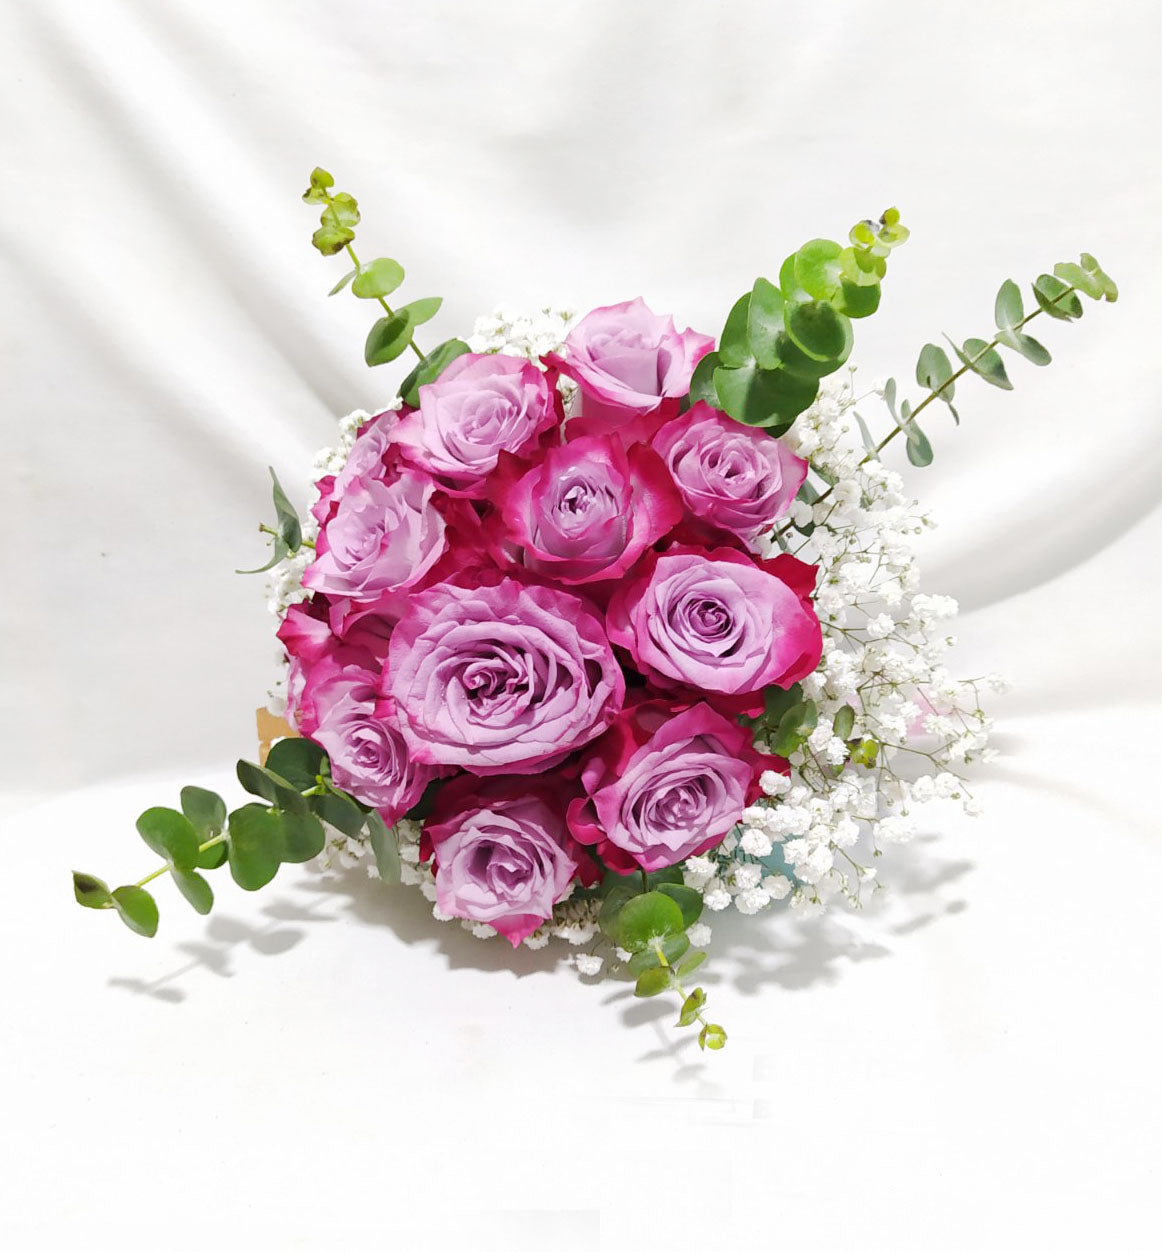 Bridal Bouquet - Premium imported ecuadorian rose